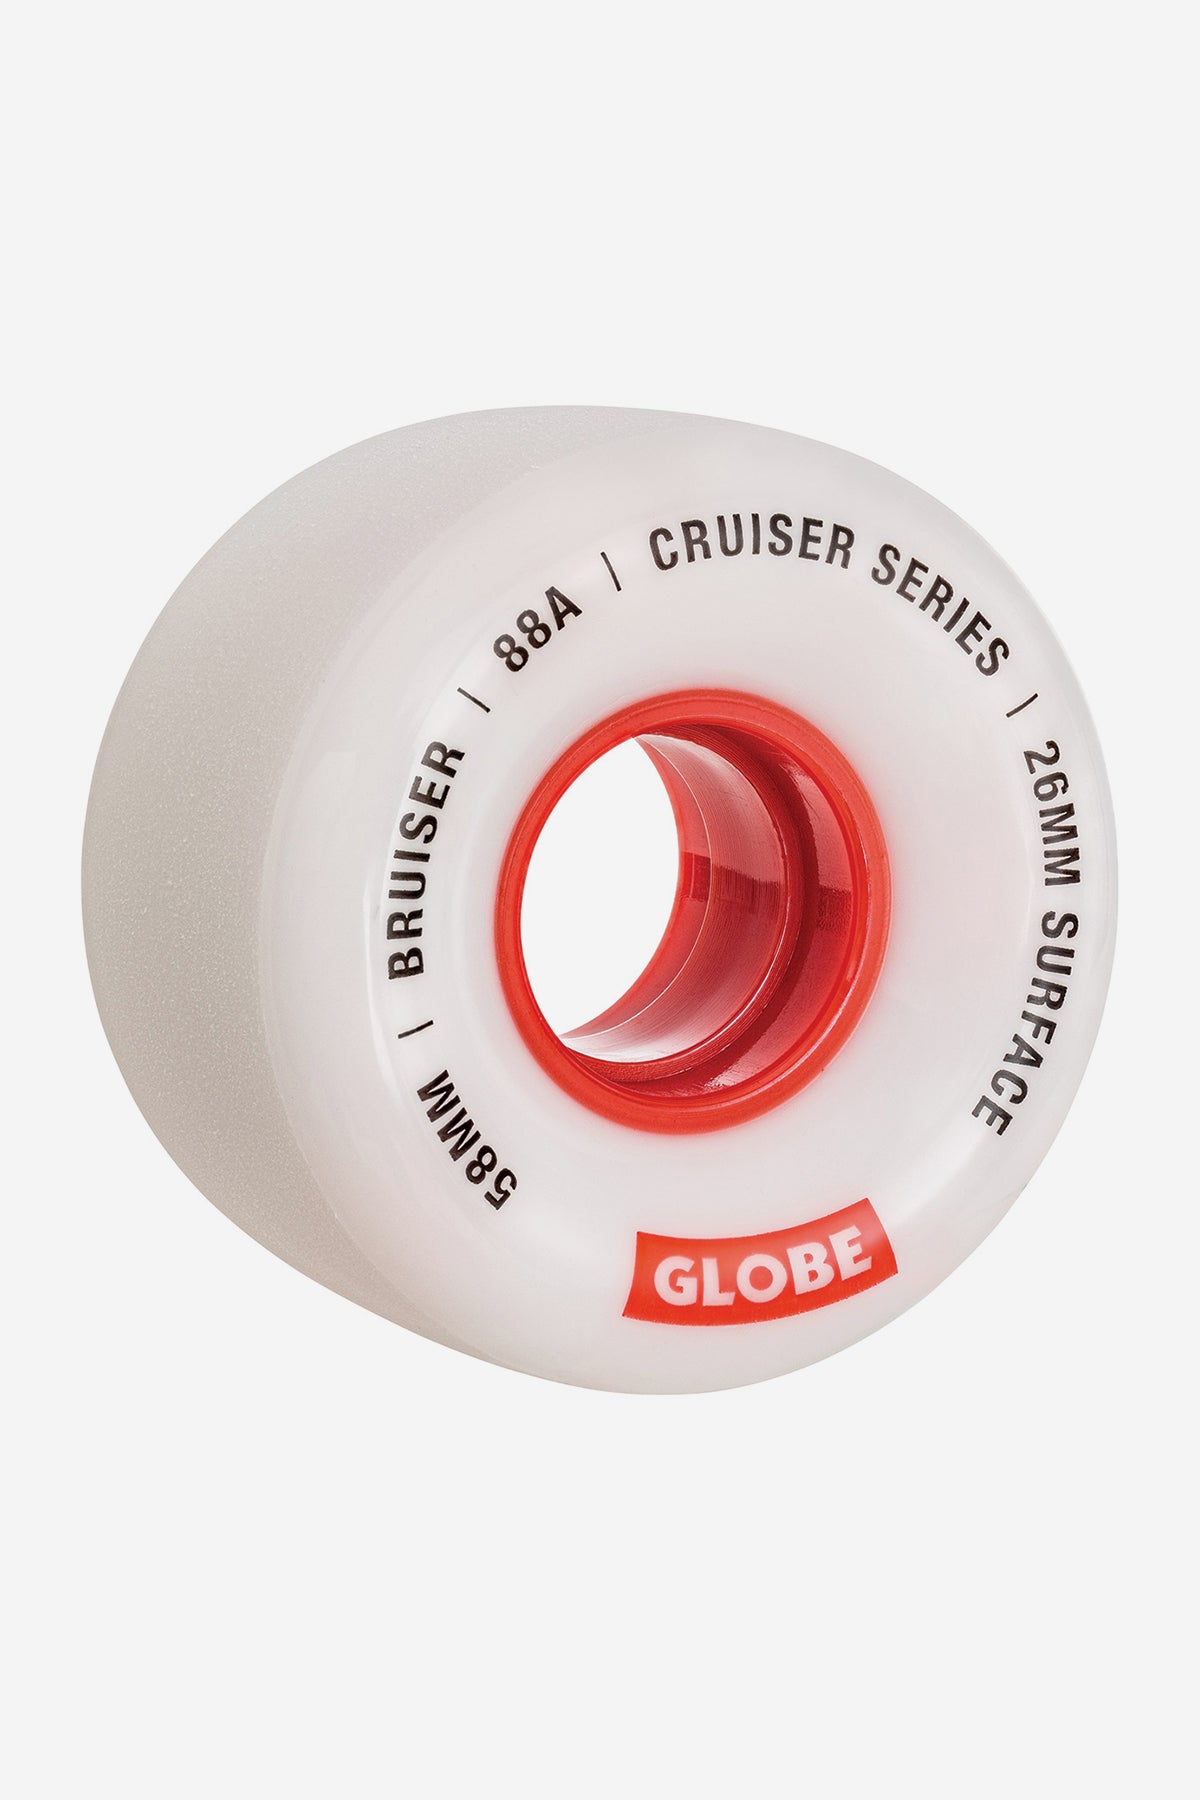 detail of Bruiser Cruiser Wheel 58mm - White/red